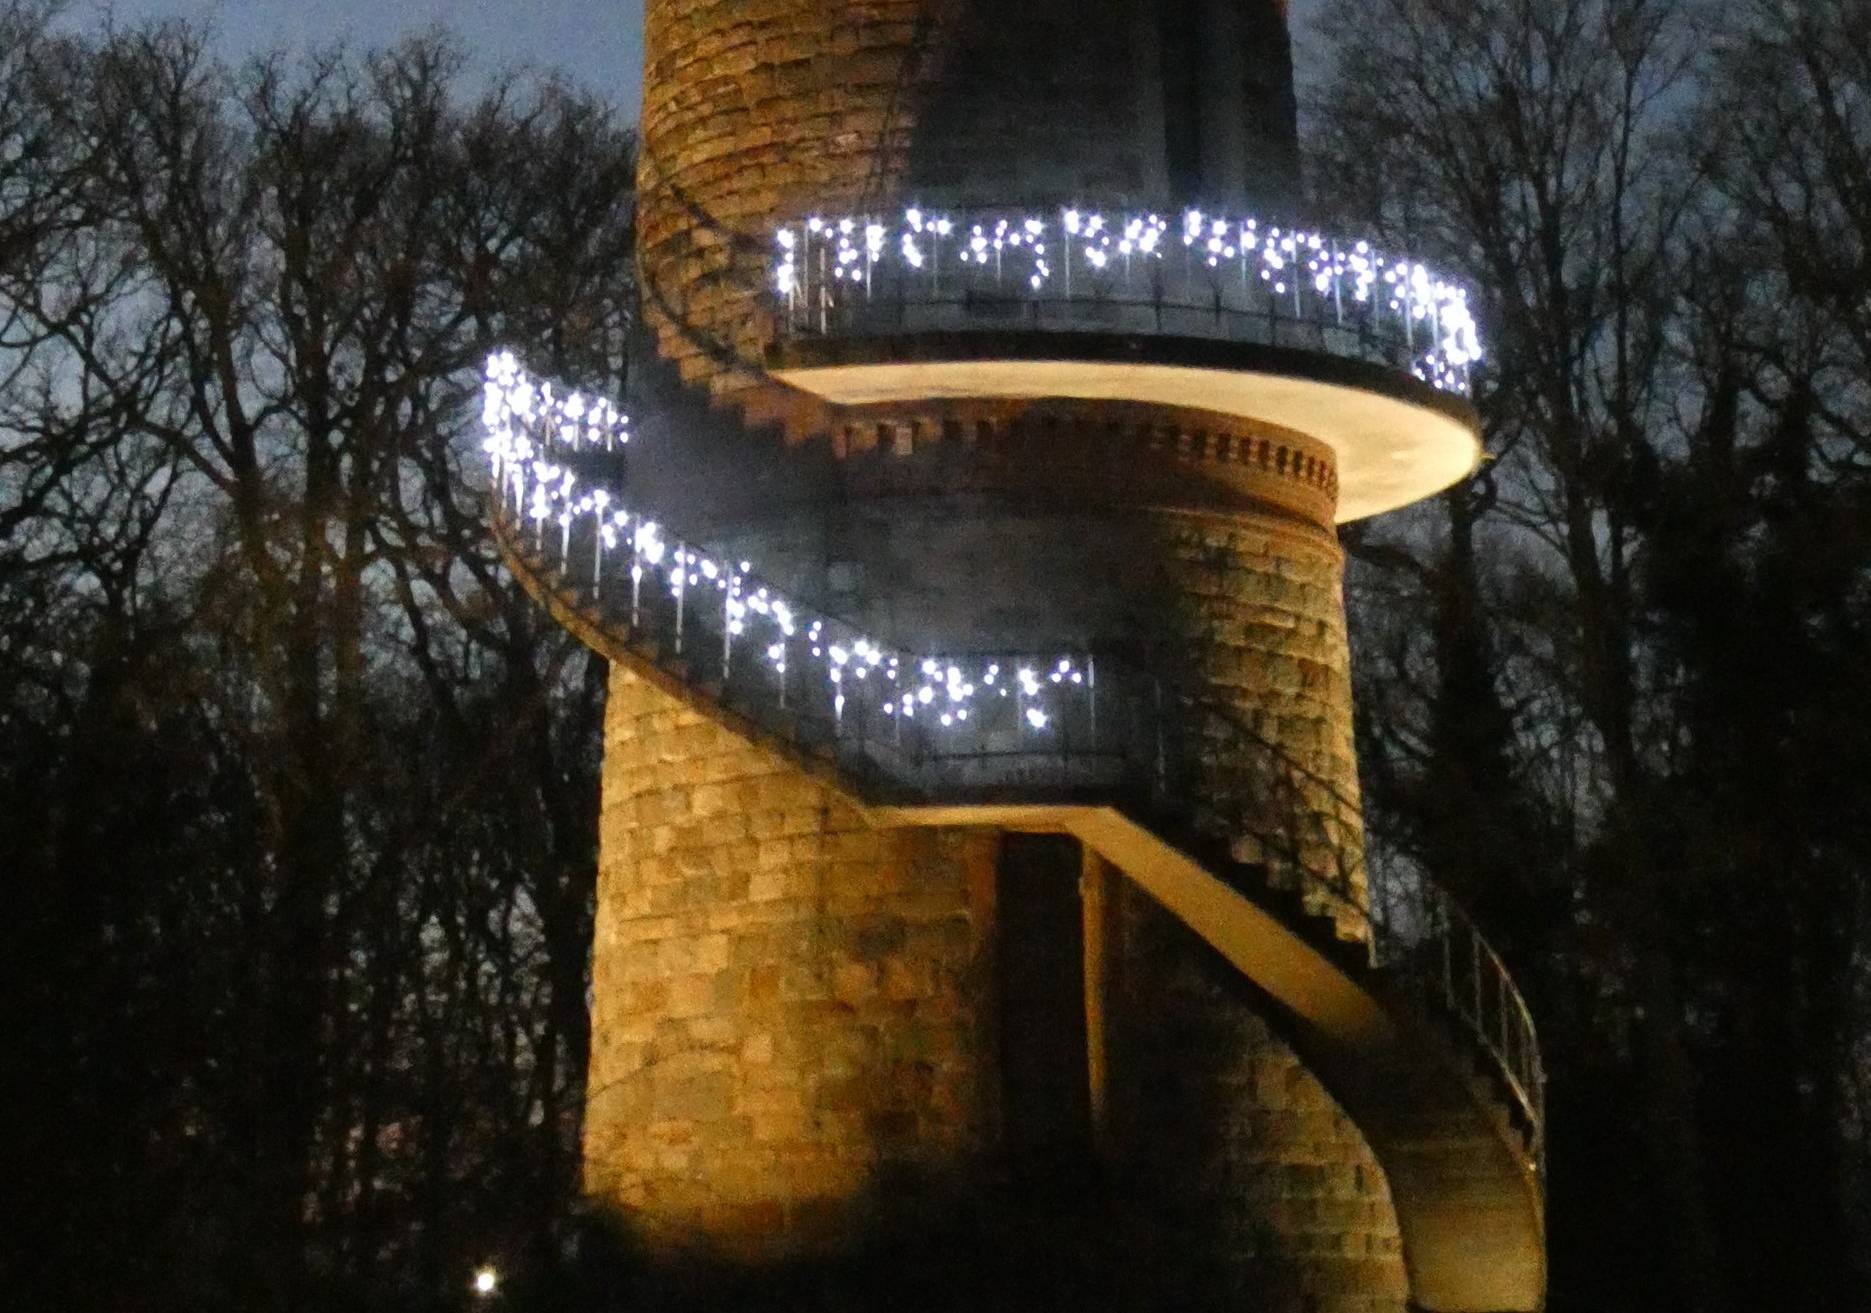  Das Bild zeigt den festlichen Toelleturm, der auch ohne Feuerwerk ein schöner Anblick ist. 